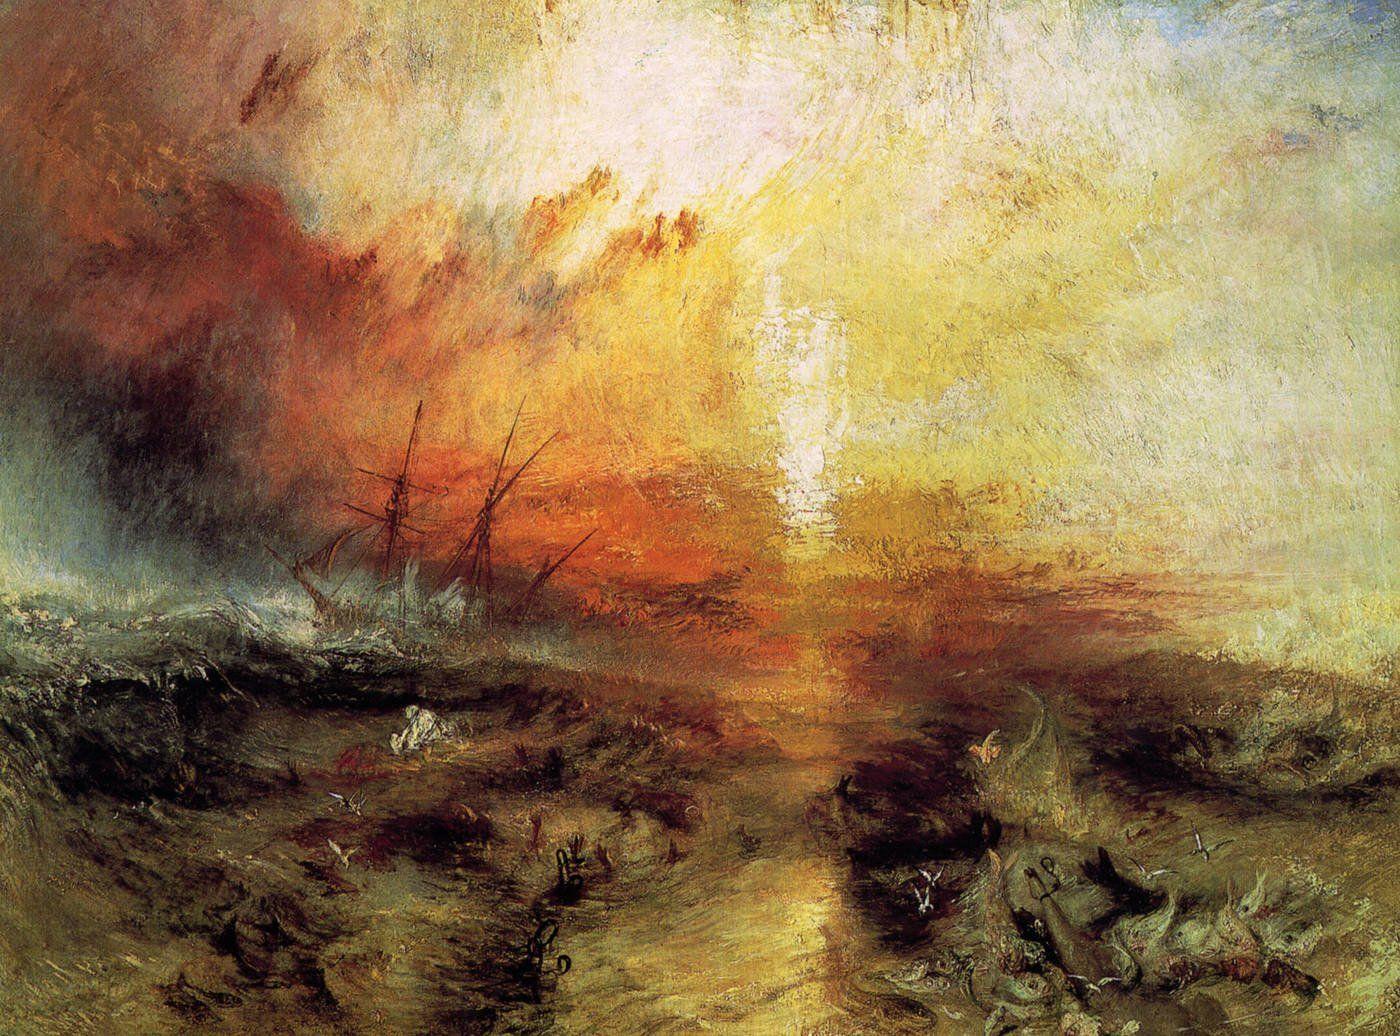 دانلود تابلو نقاشی زیبا از ویلیام ترنر به نام کشتی برده 